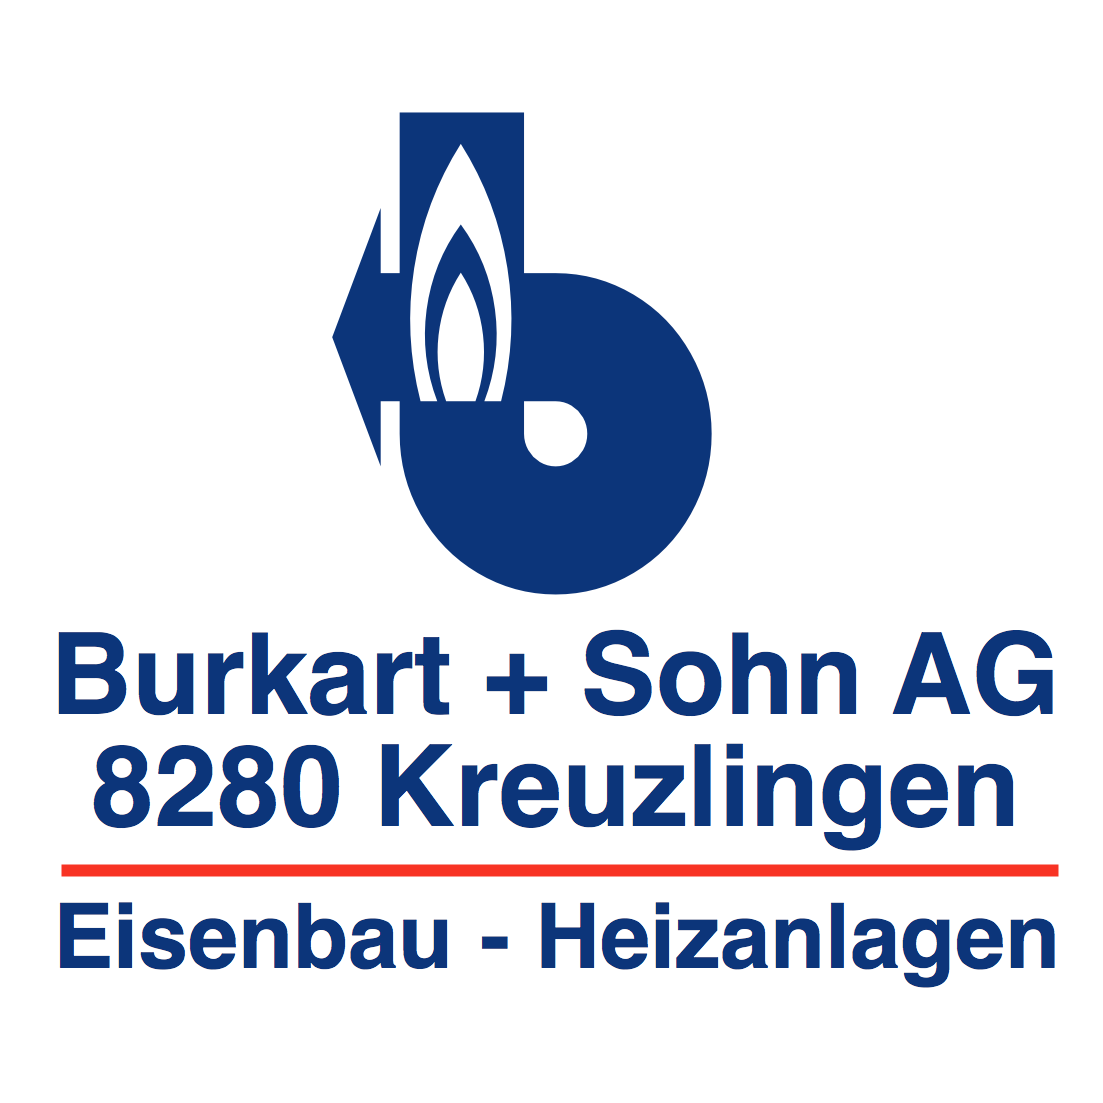 Burkart + Sohn AG Logo